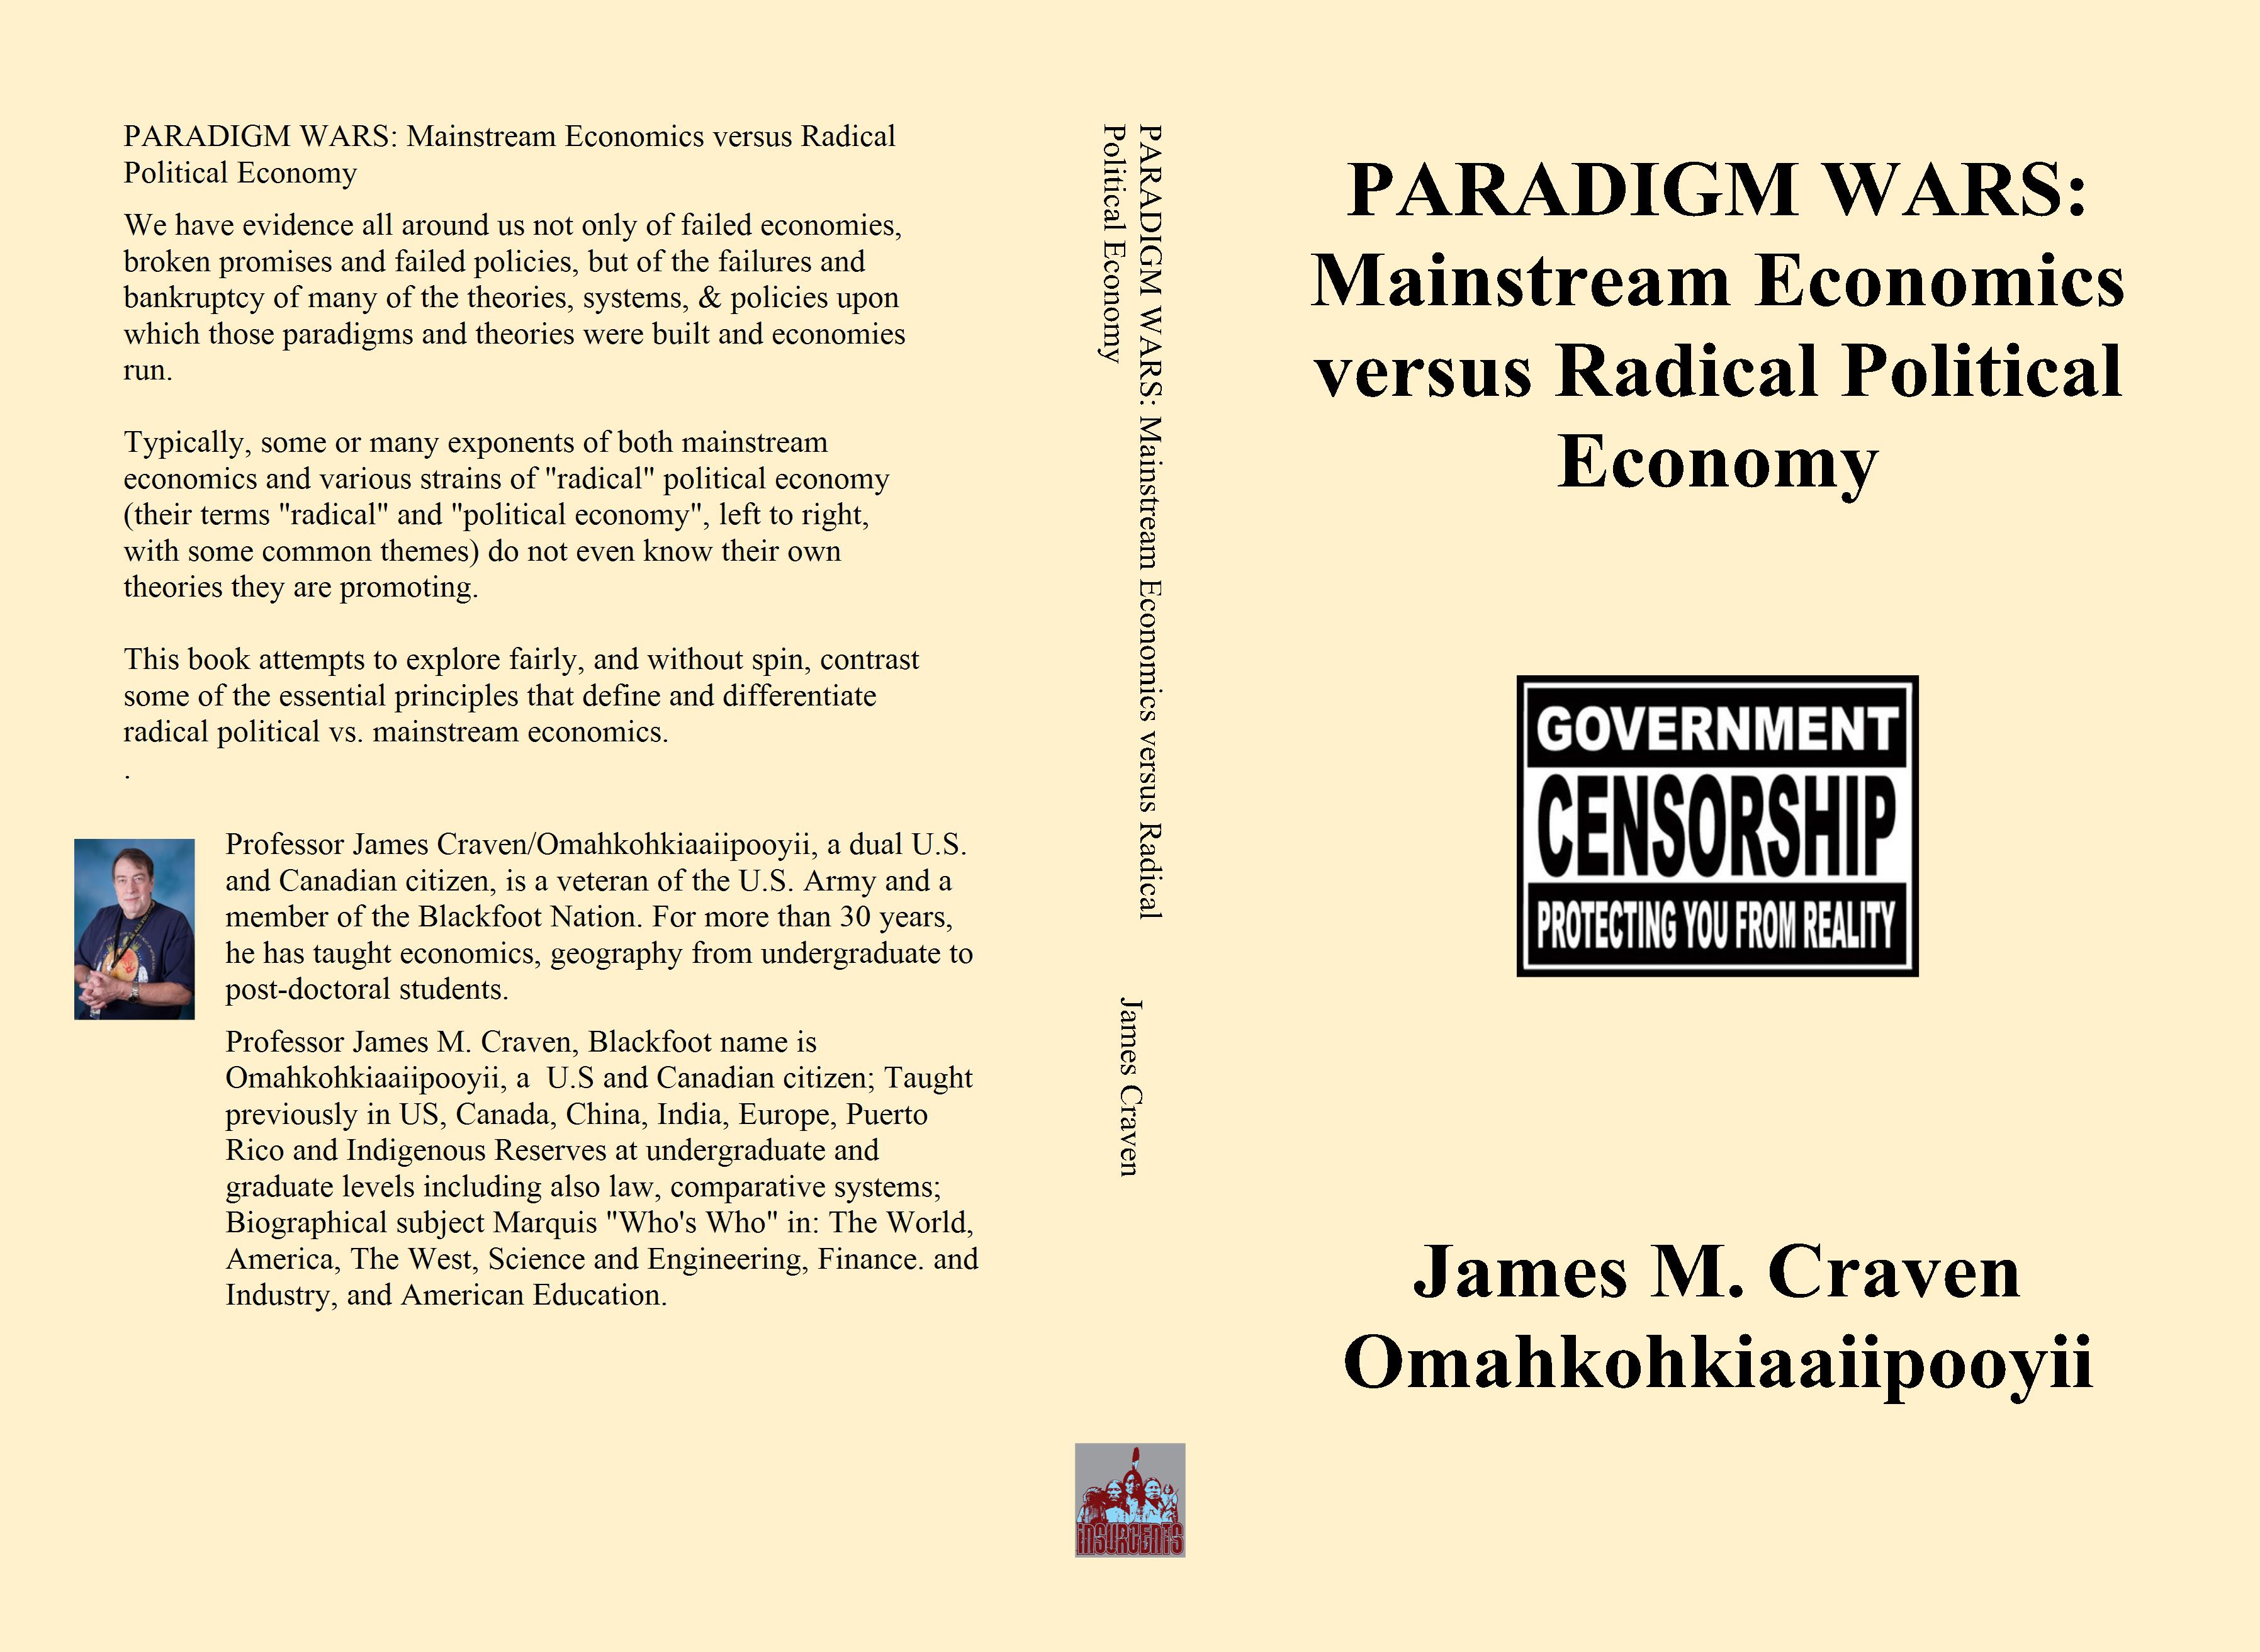 PARADIGM WARS: Mainstream Economics versus Radical Political Economy cover image